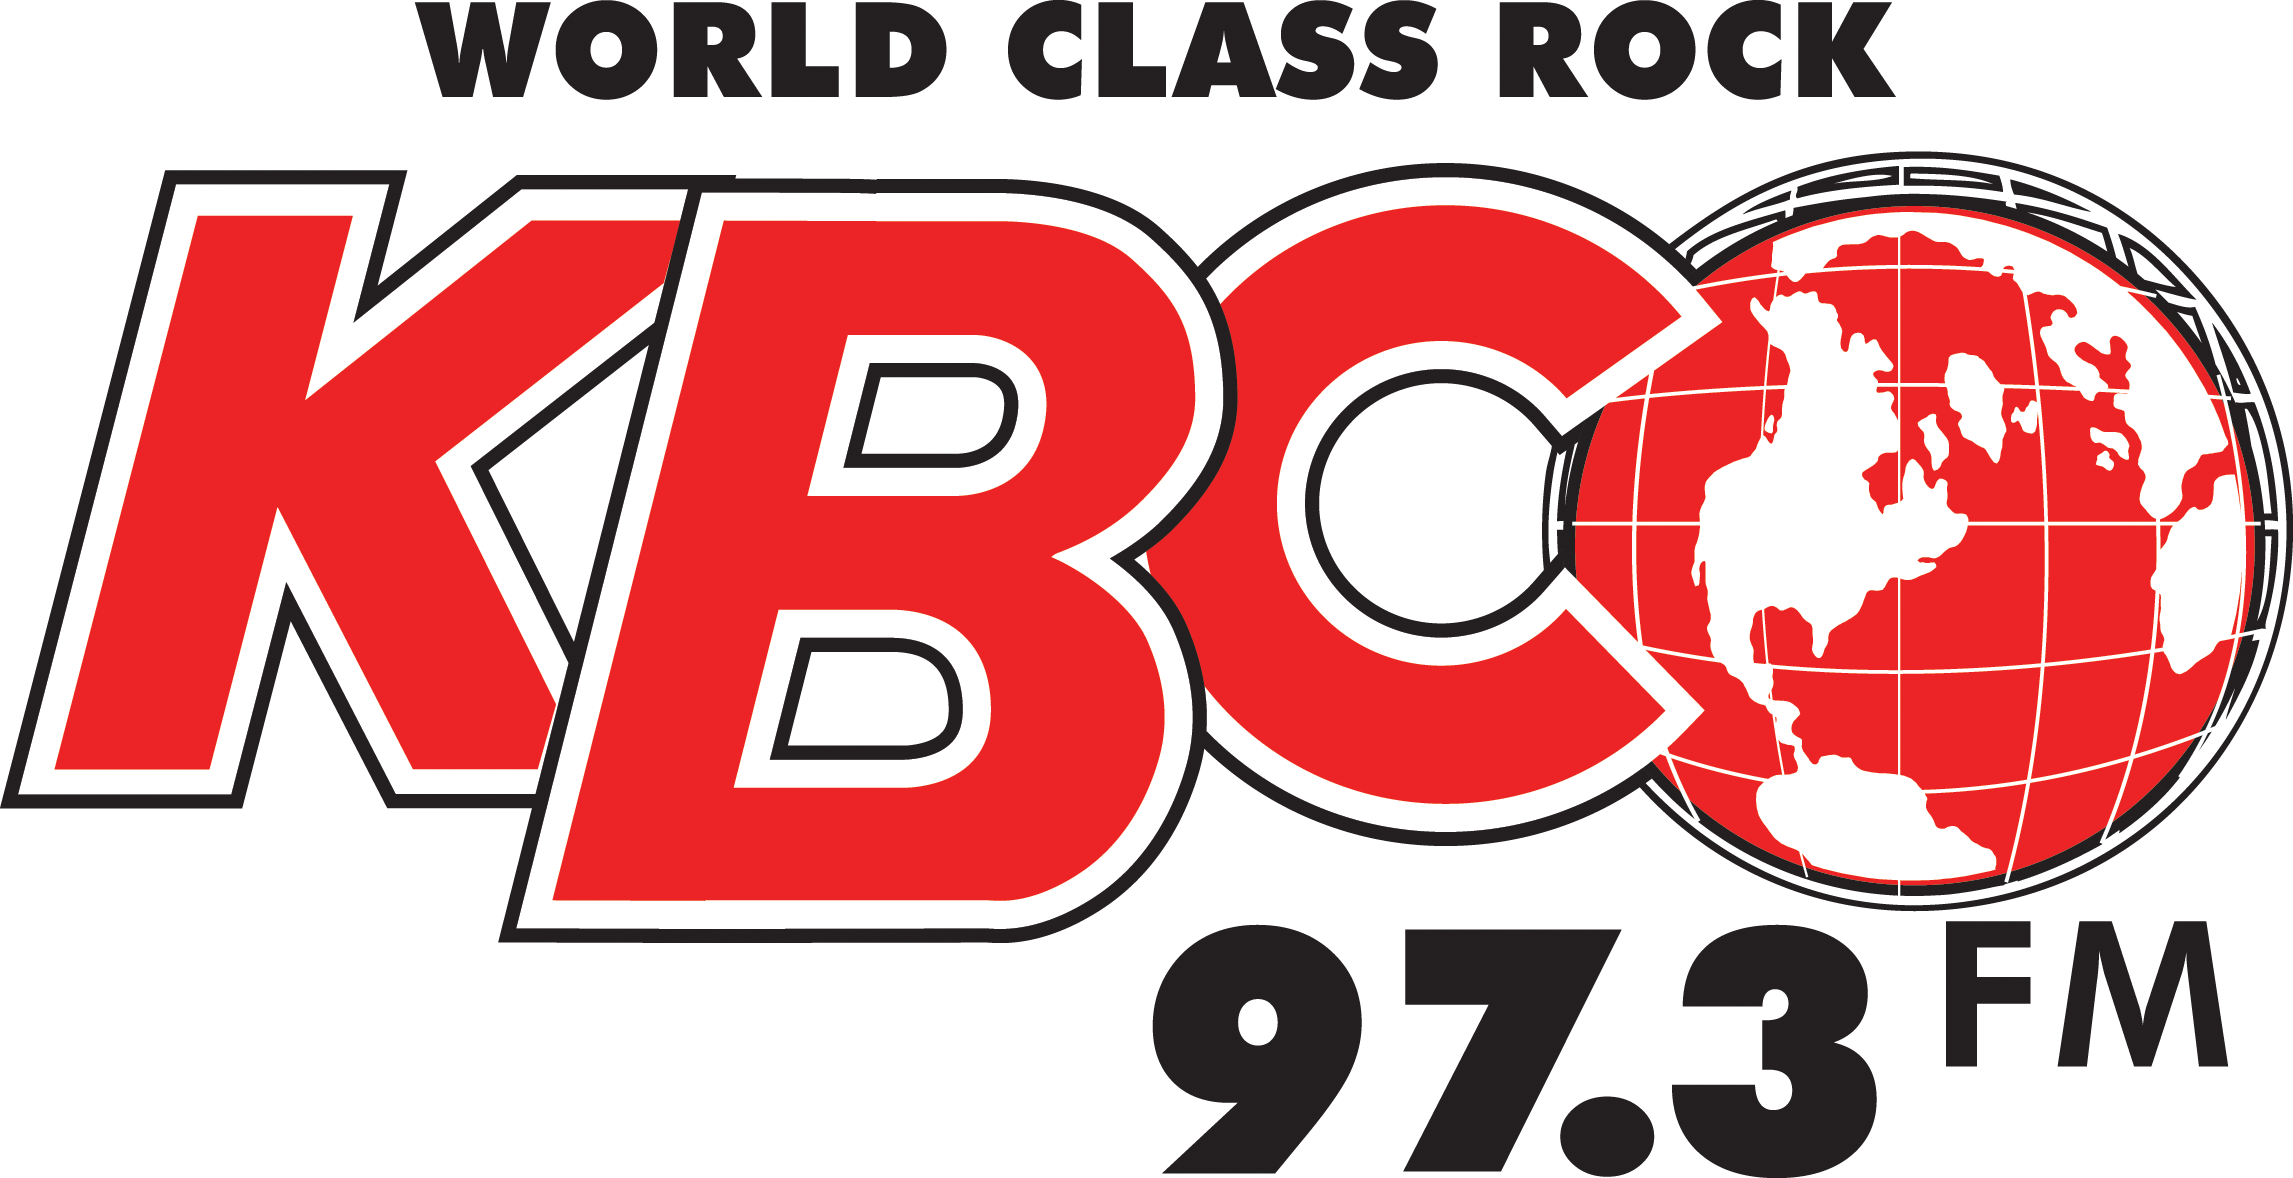 KBCO logo